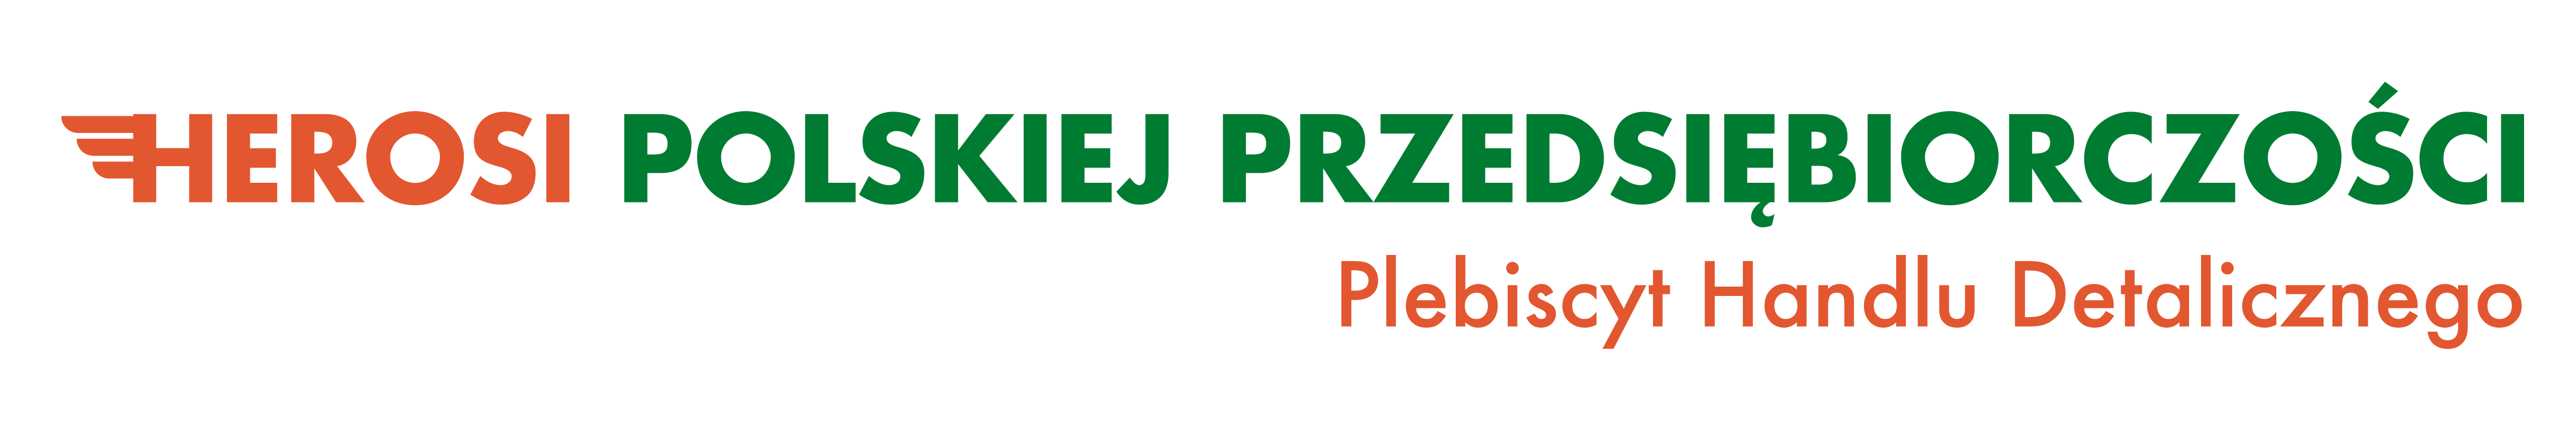 Wystartuj w Plebiscycie i zostań Herosem Polskiej Przedsiębiorczości!